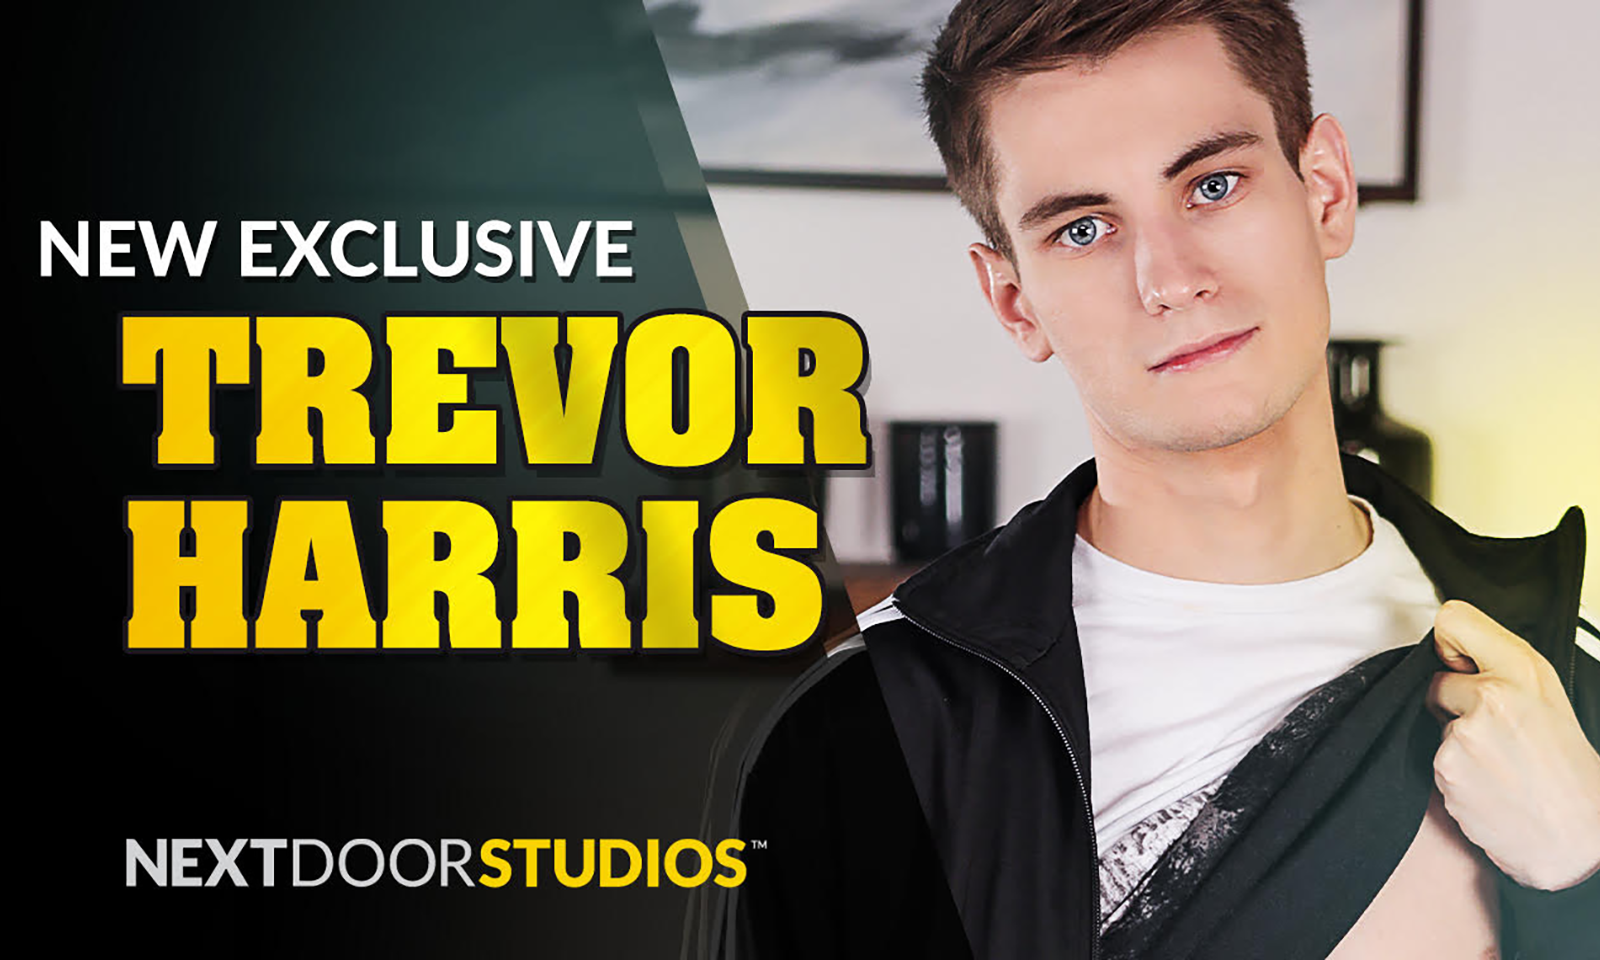 Next Door Studios Signs Trevor Harris to Exclusive Contract